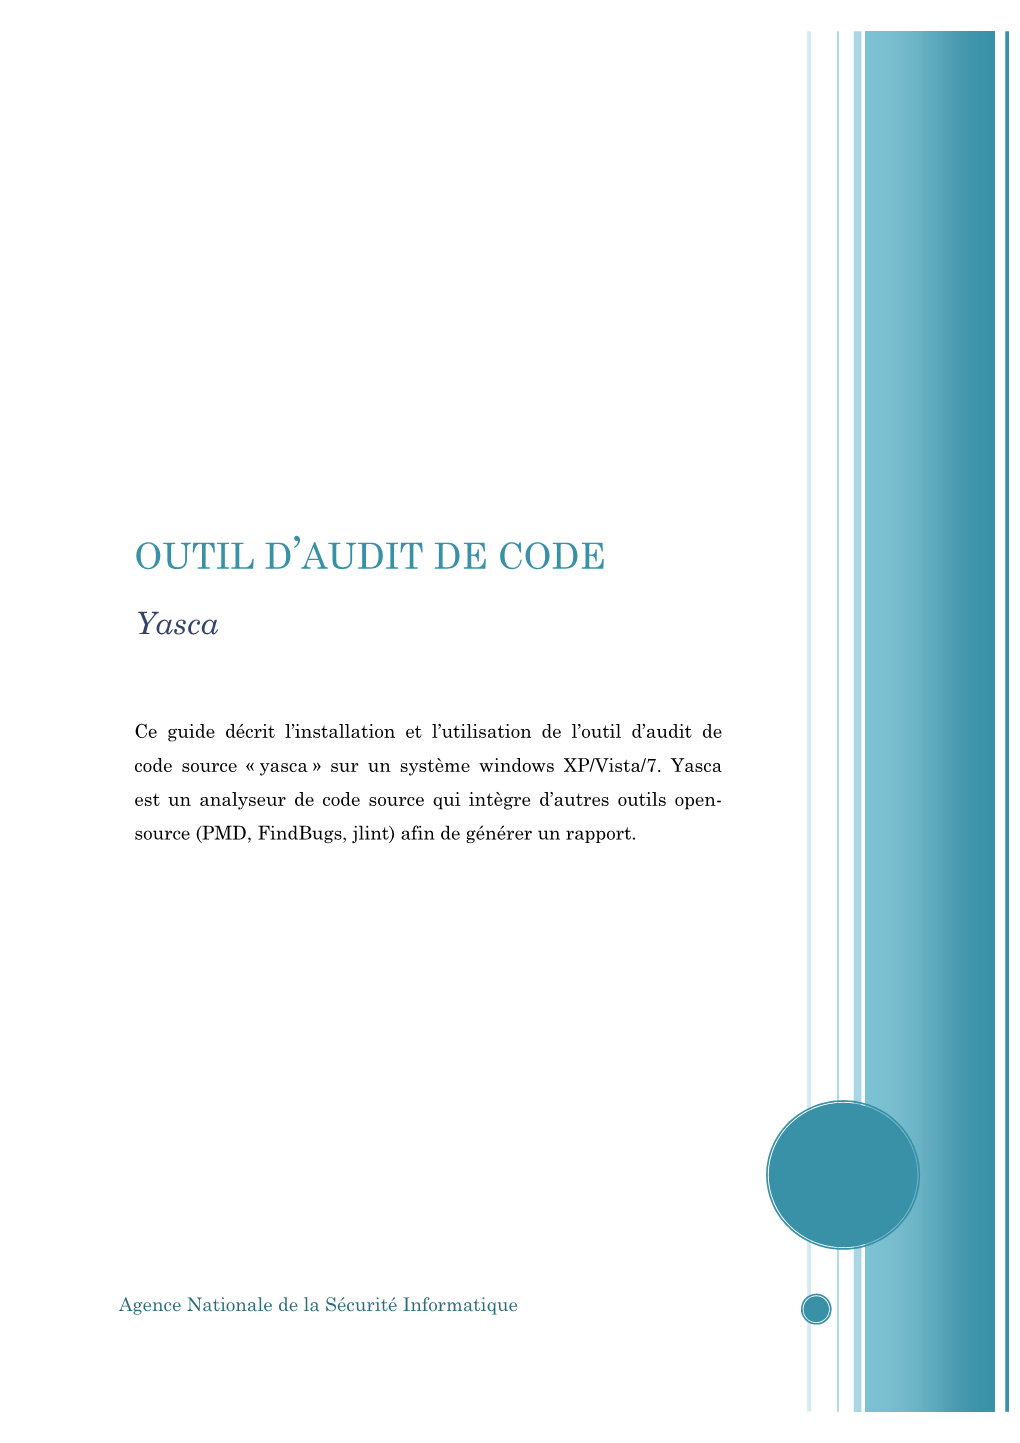 Outil D'audit De Code Source